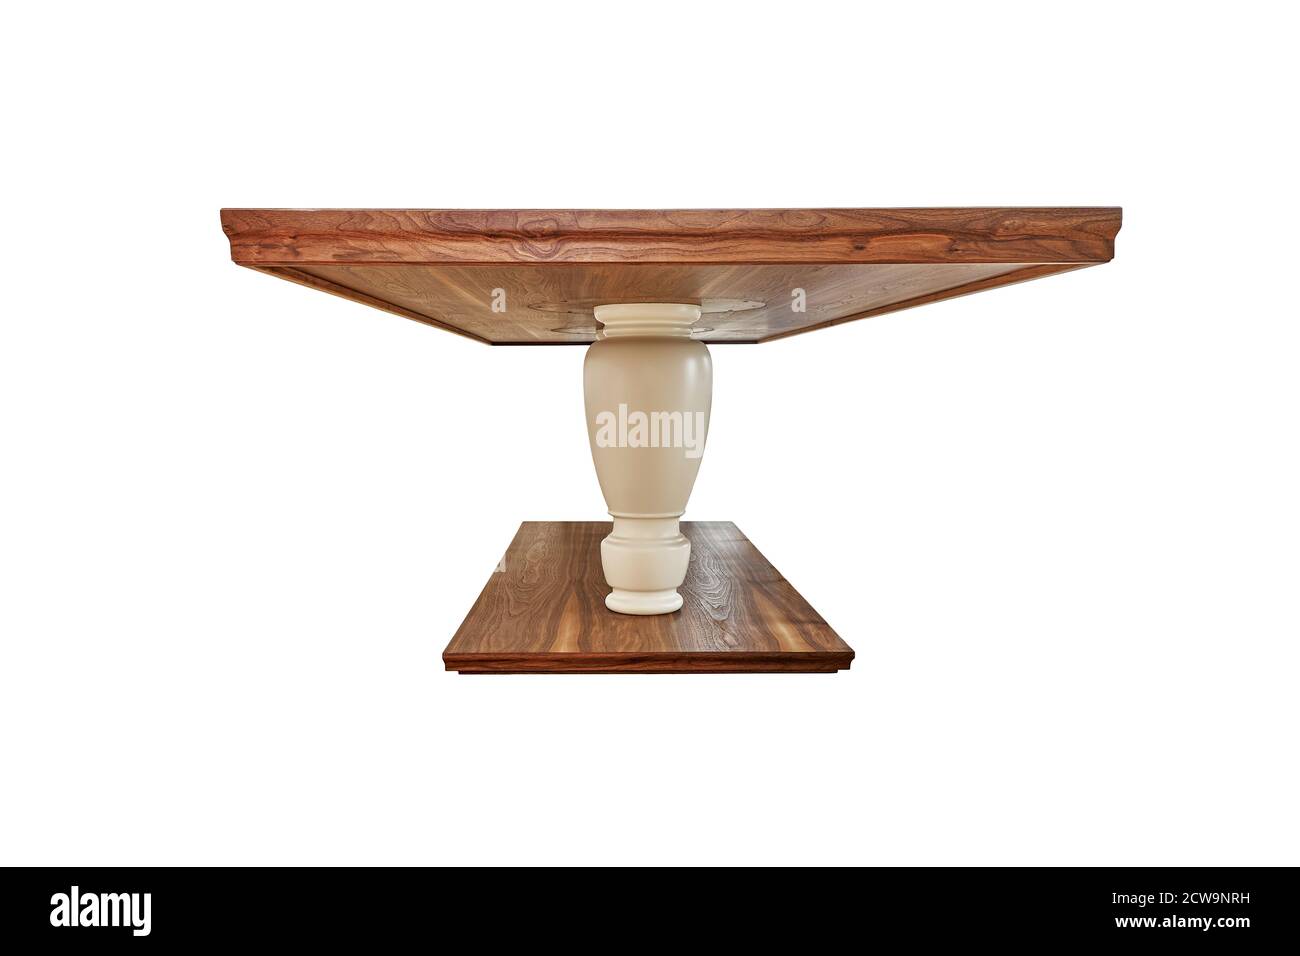 Table de dîner en bois de noyer massif sur des jambes massives isolé sur fond blanc Banque D'Images